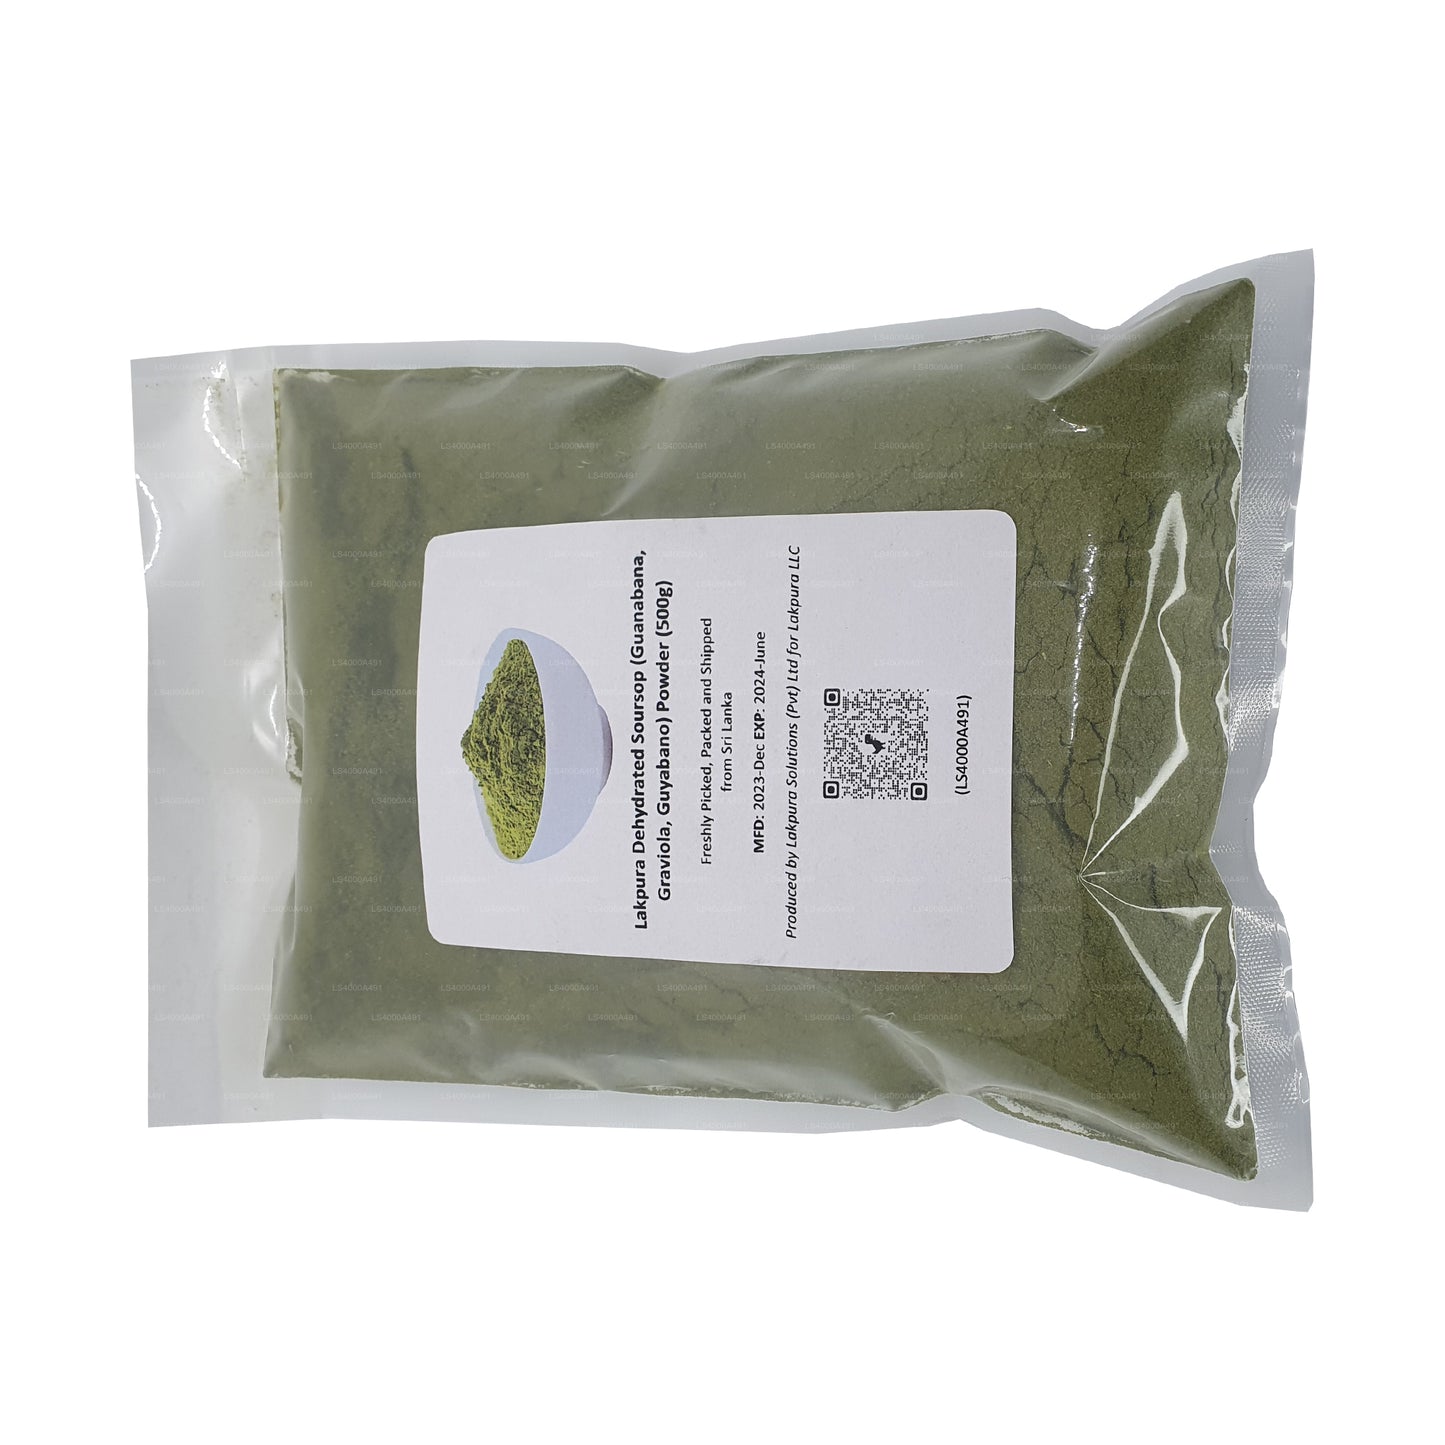 Lakpura Bio Soursop Graviola Pulver (100 g)